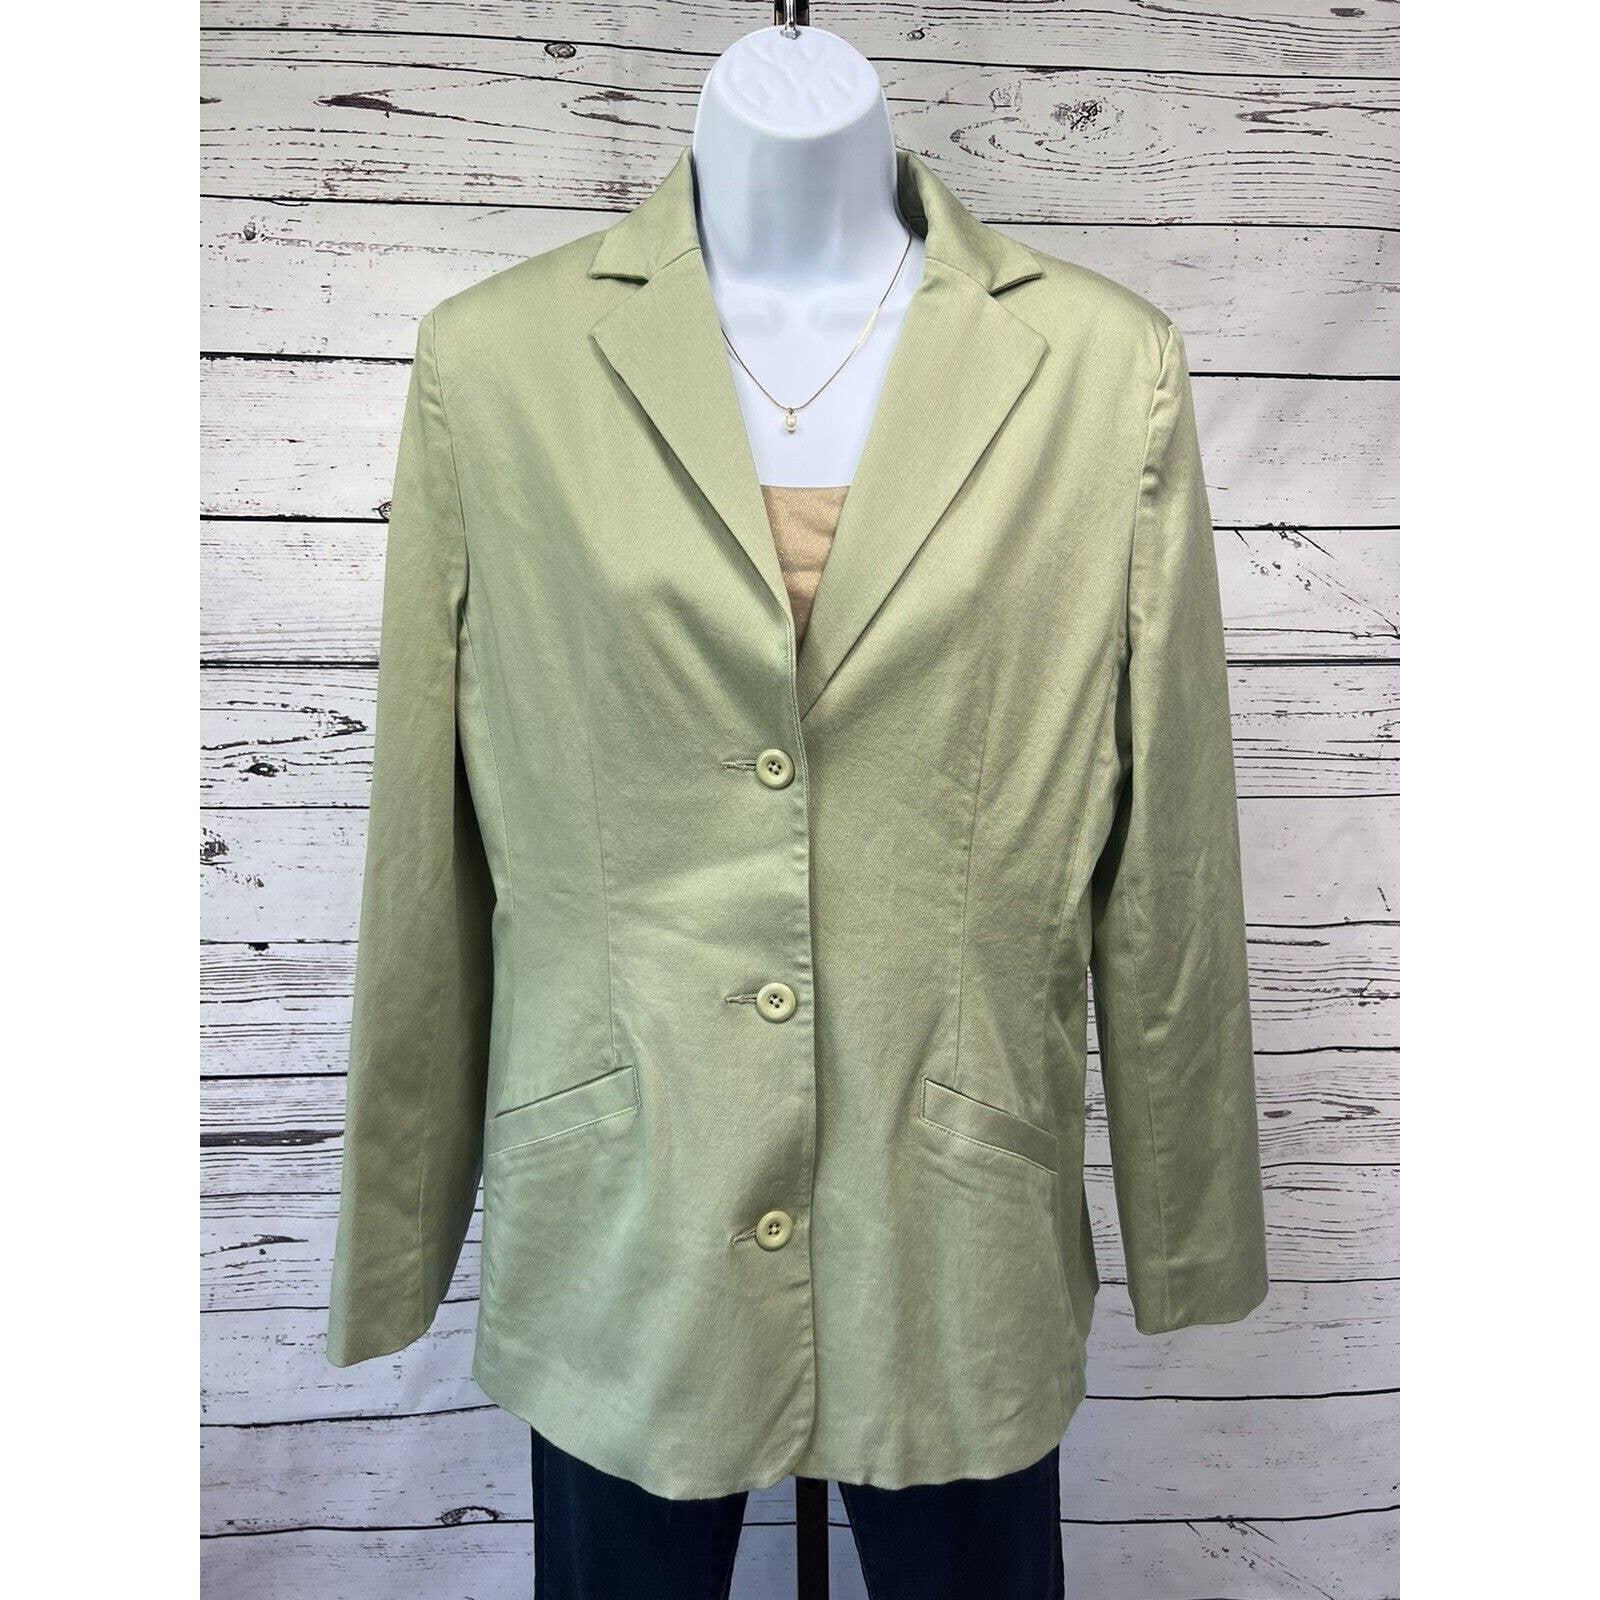 LL Bean 3 Button Blazer Women’s Size 8 Pale Green Cotton Lycra Casual Jacket